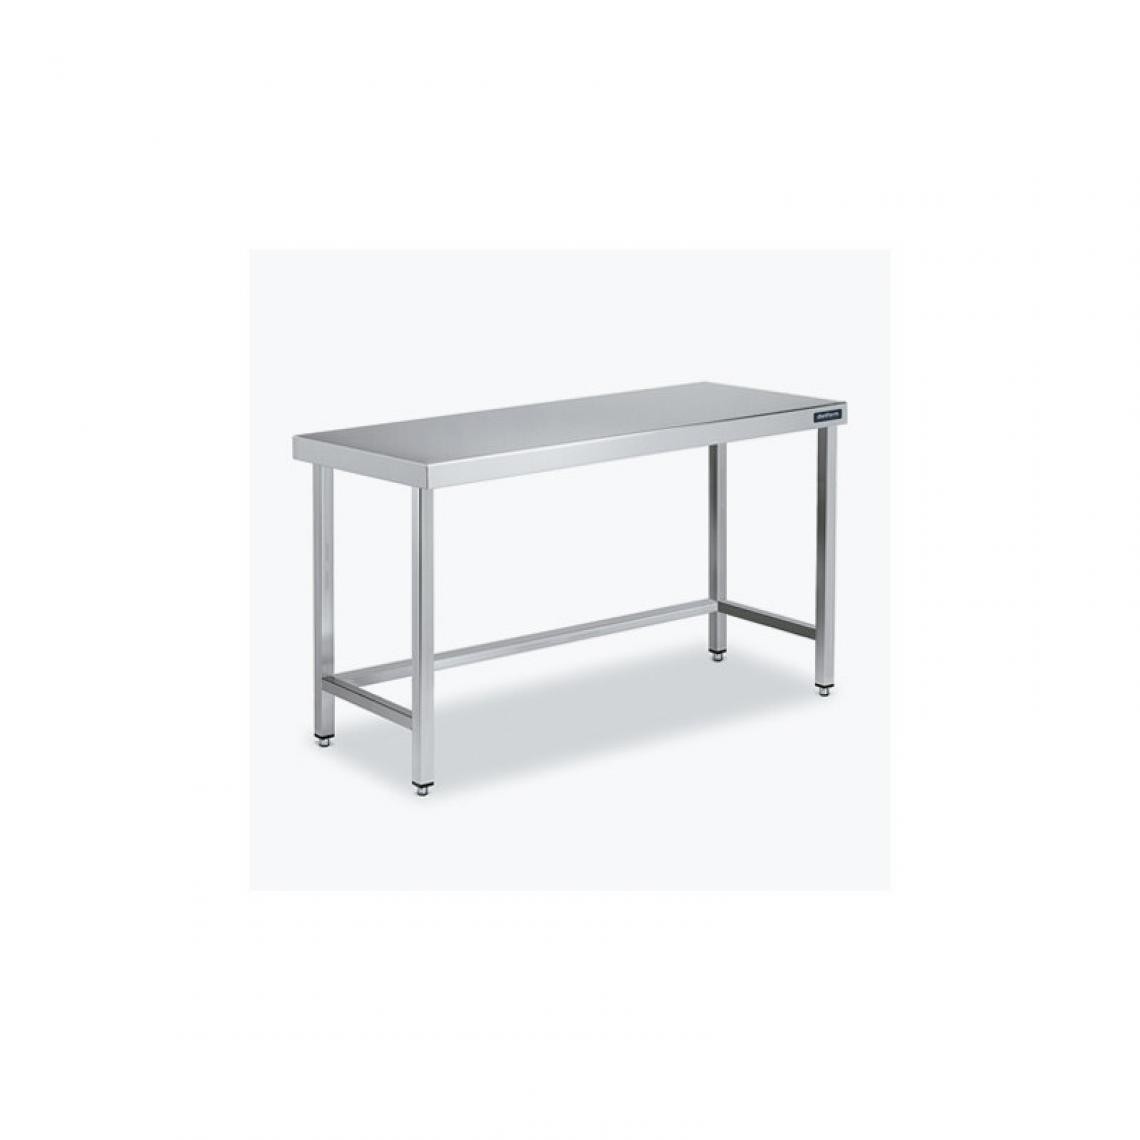 DISTFORM - Table Centrale 600x900 avec Renforts - Distform - Inox 18/101300x900x850mm - Tables à manger